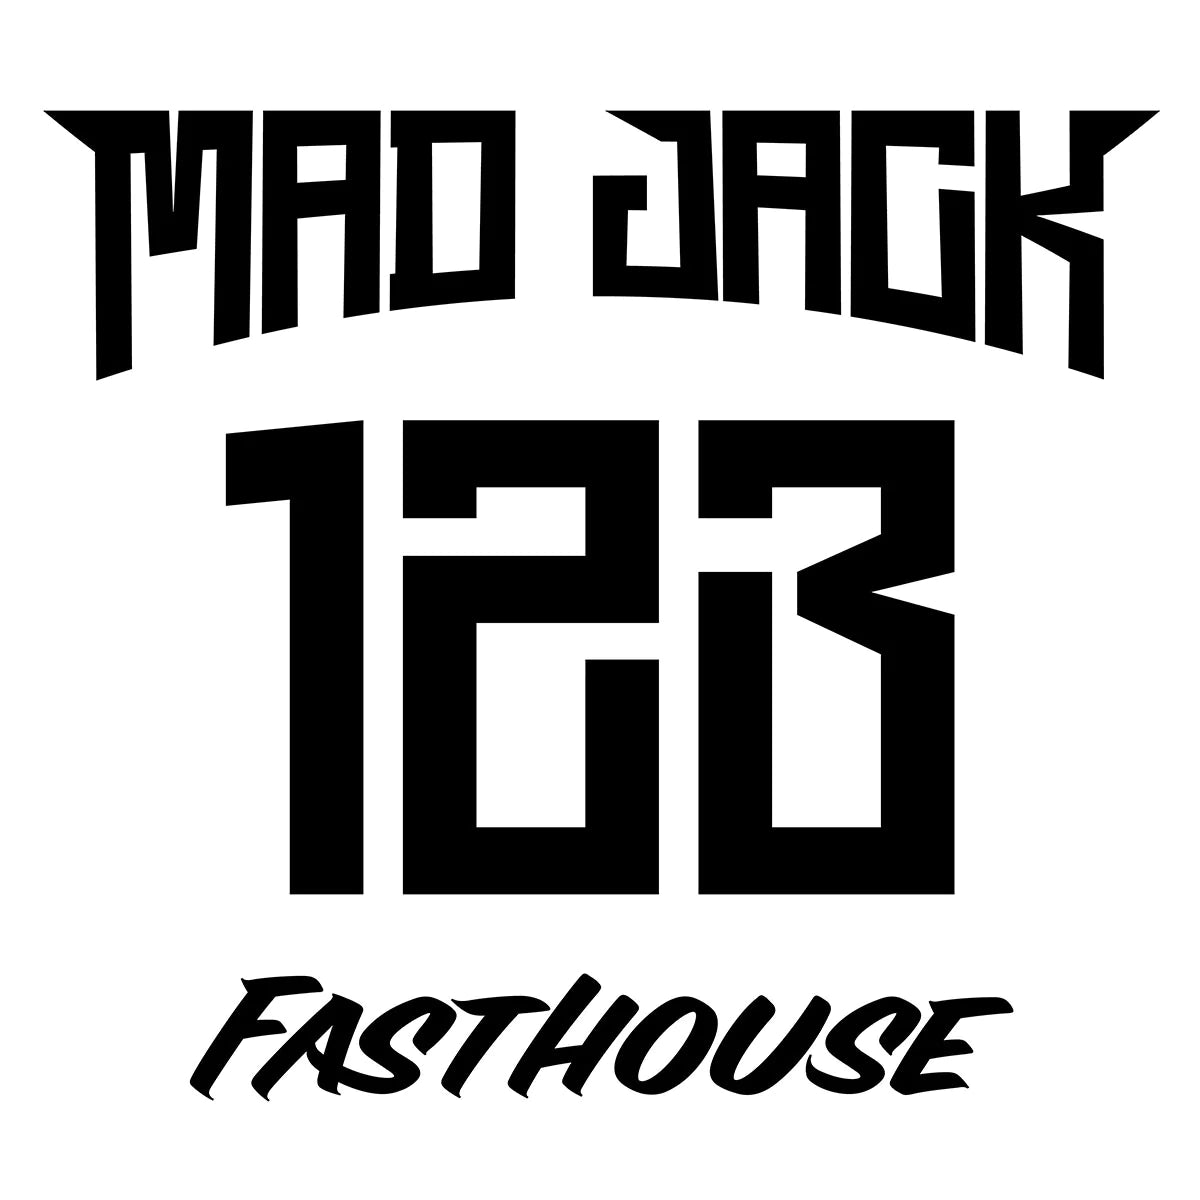 Personalizzazione - Mad Jack